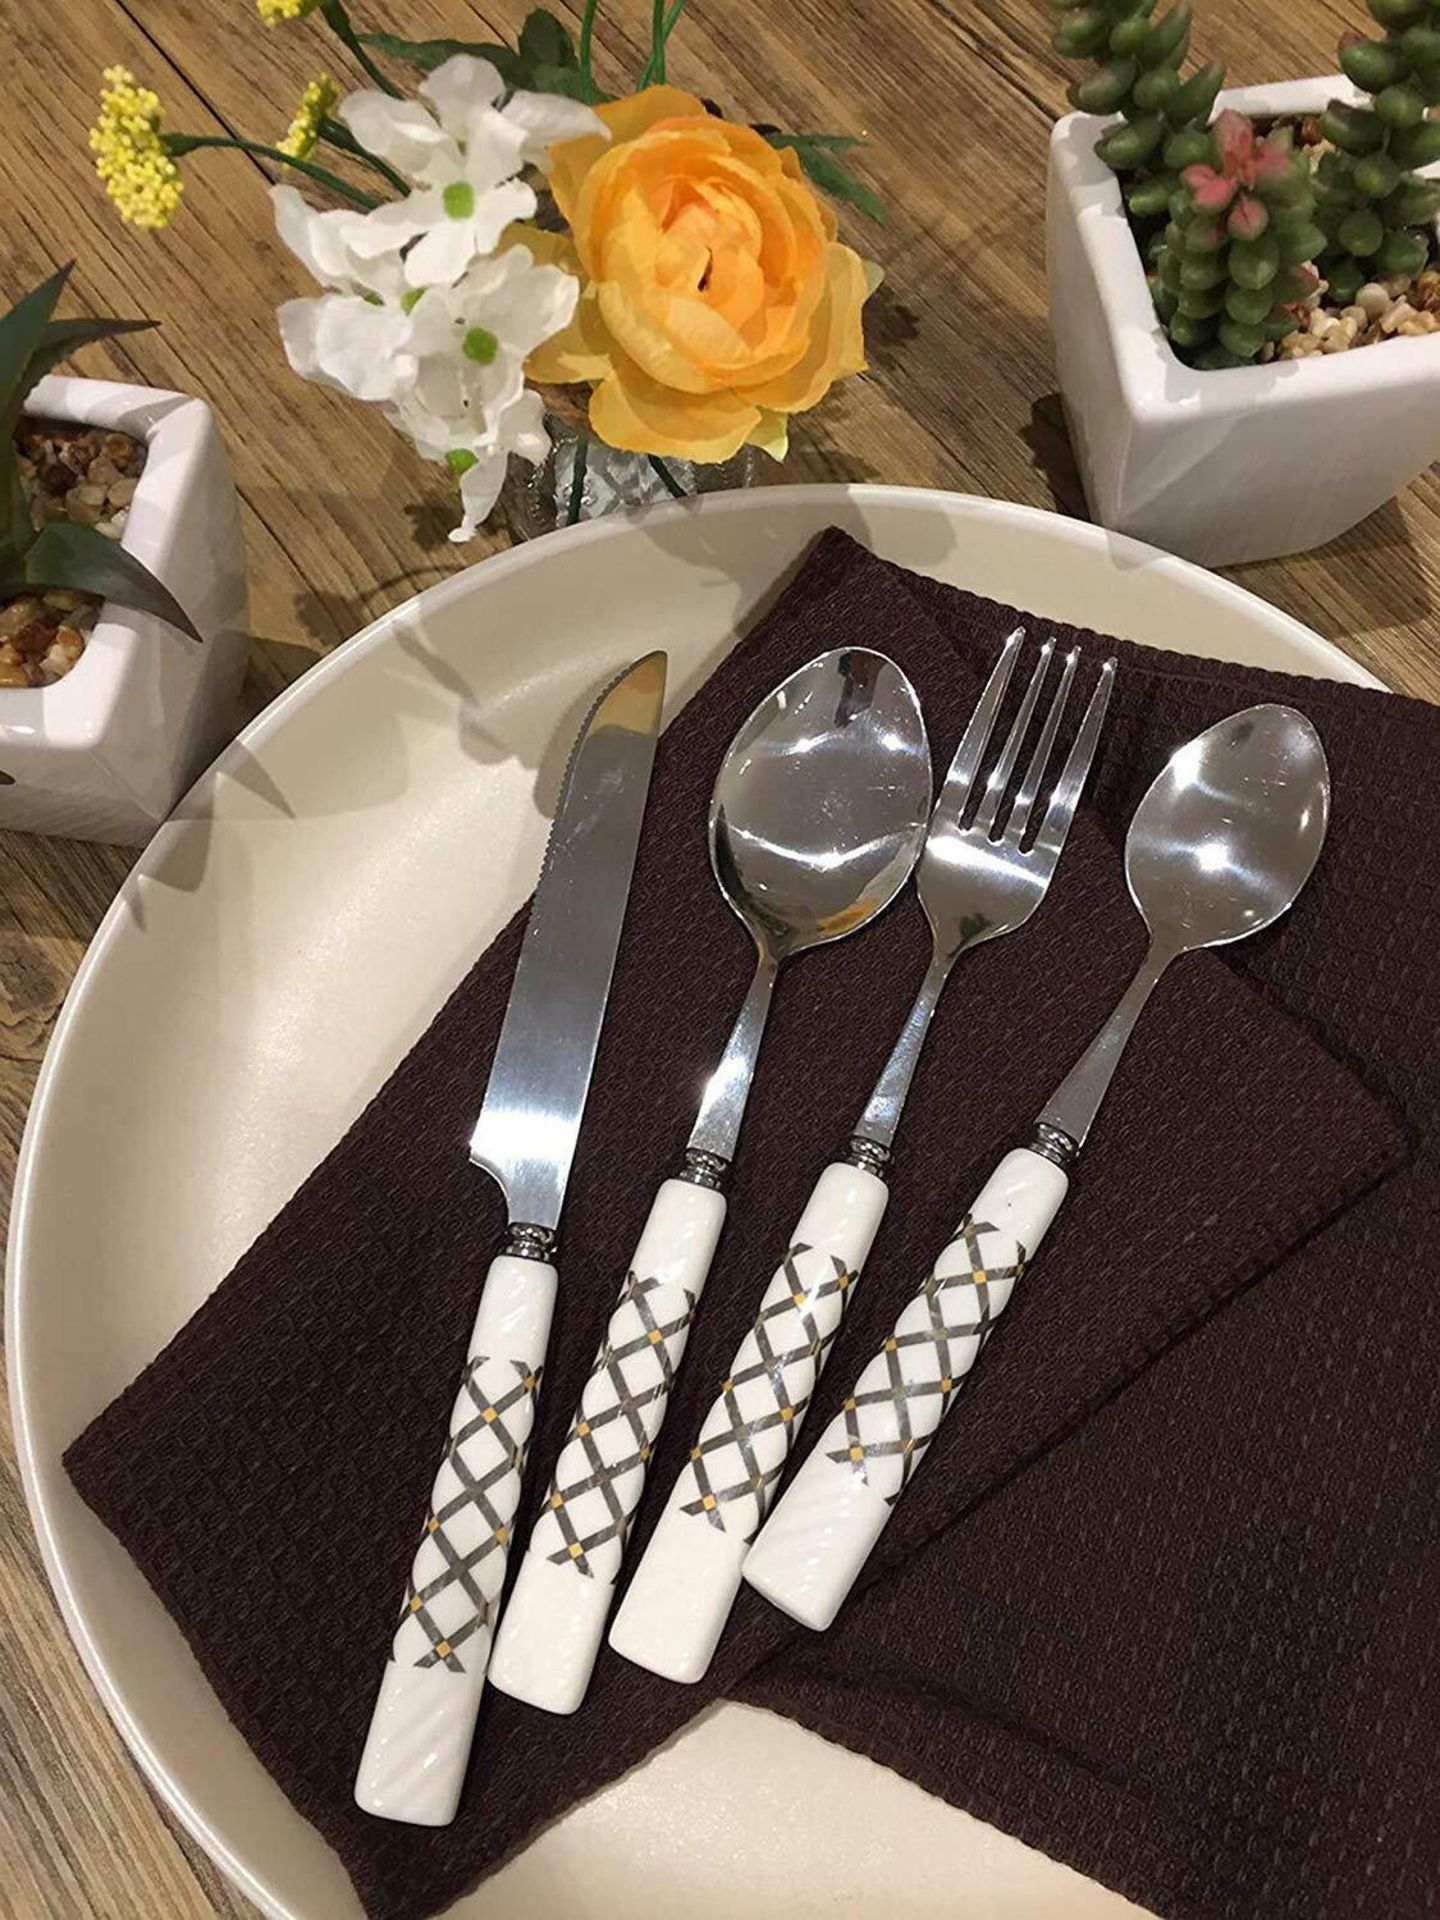 LENKON Cutlery Set,Tableware 24 Piece Stainless Steel Flatware,Silverware Set - Image 6 of 7